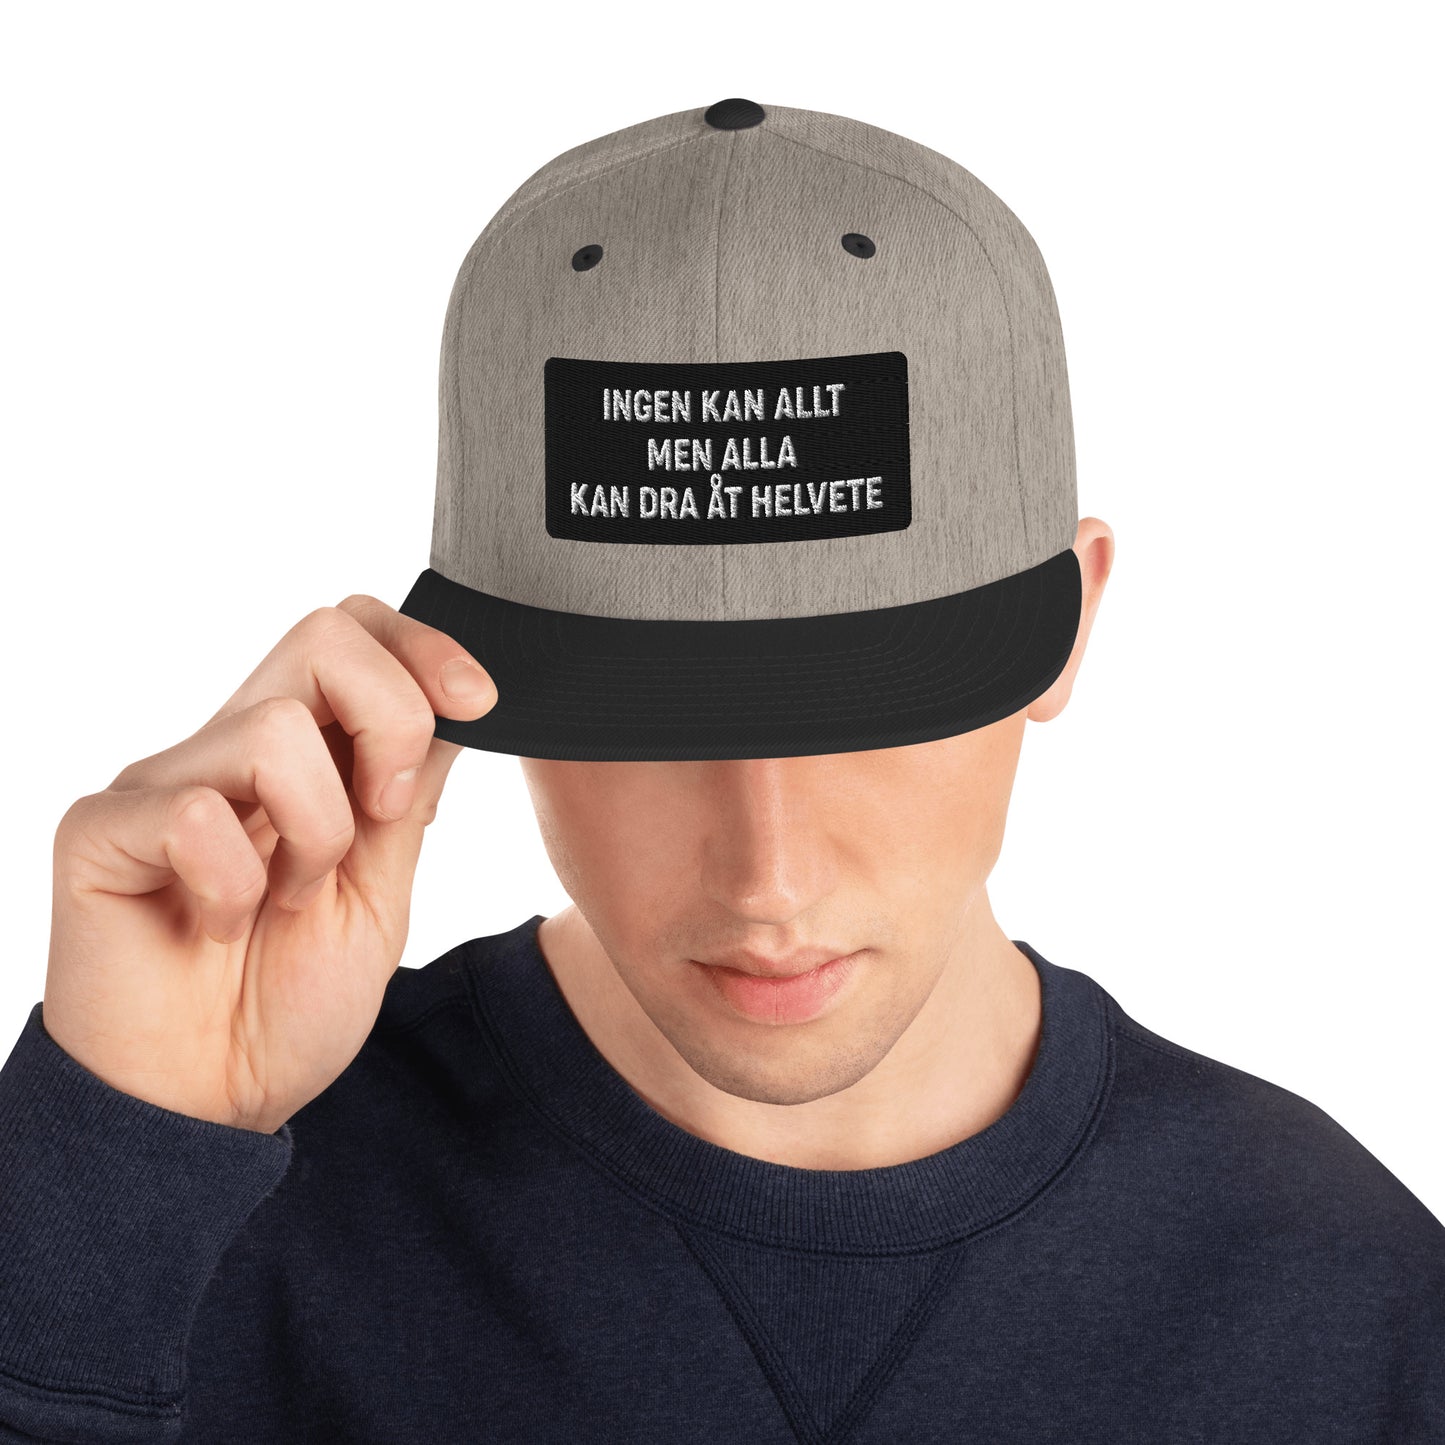 INGEN KAN ALLT MEN ALLA KAN DRA ÅT HELVETE - Snapback Hat